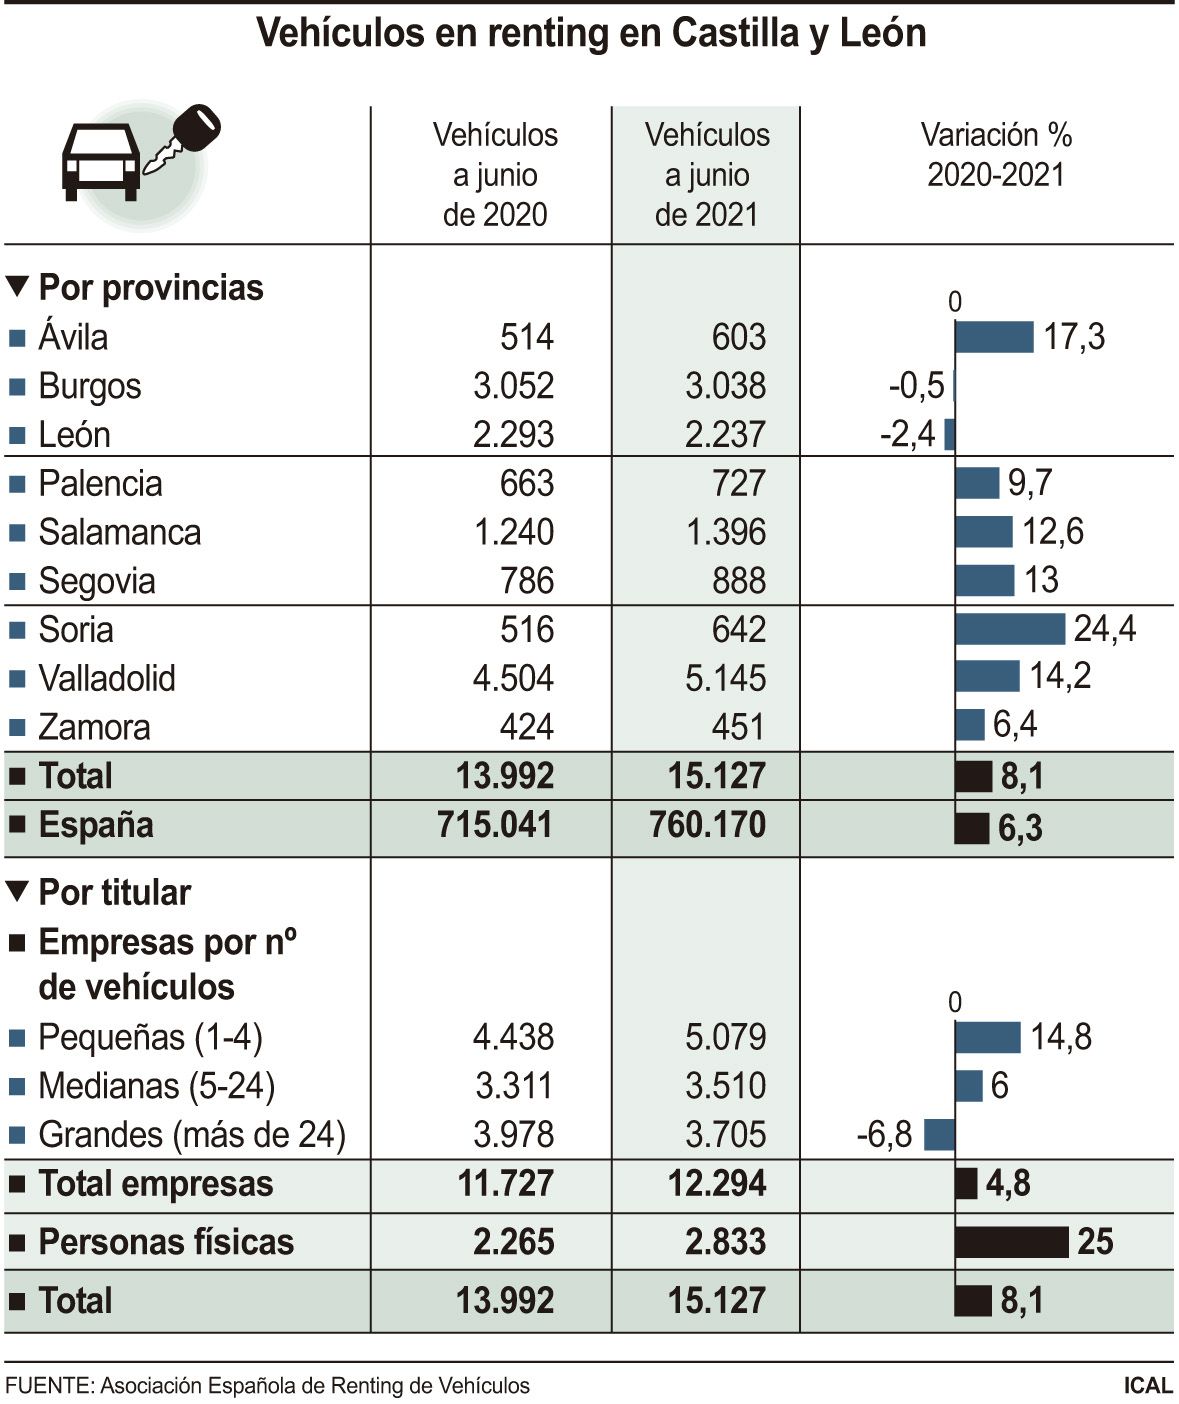 Vehículos en renting en Castilla y León